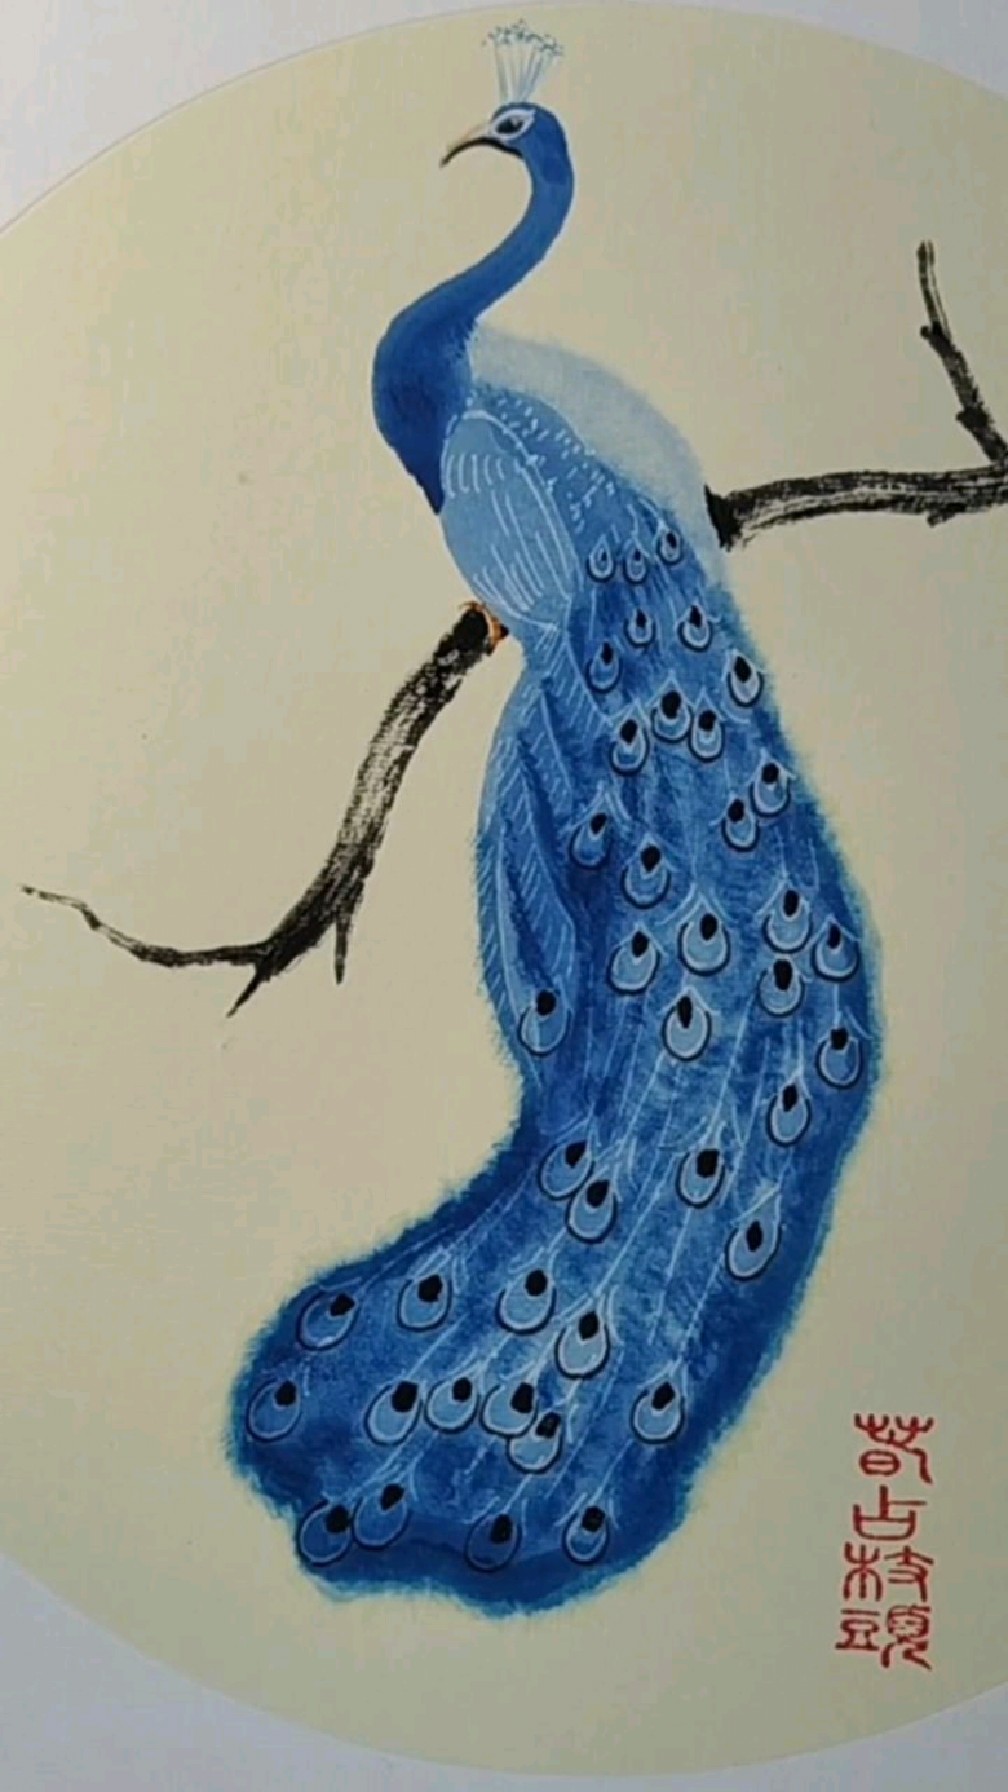 画一只蓝孔雀,一起画画吧!